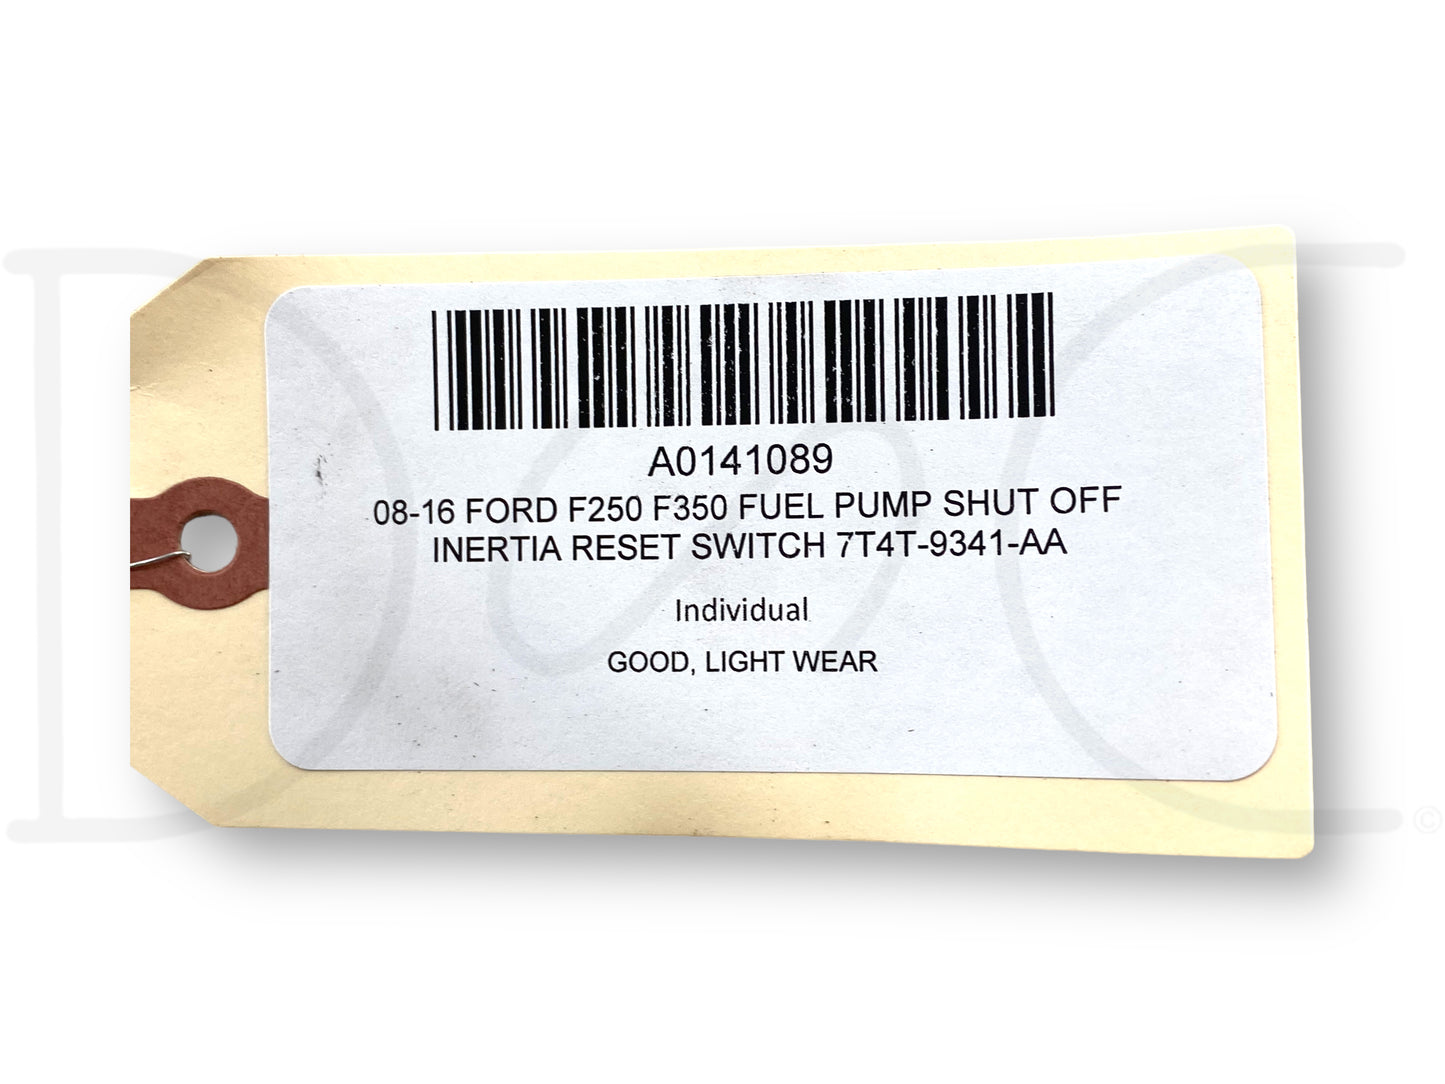 08-16 Ford F250 F350 Fuel Pump Shut Off Inertia Reset Switch 7T4T-9341-Aa